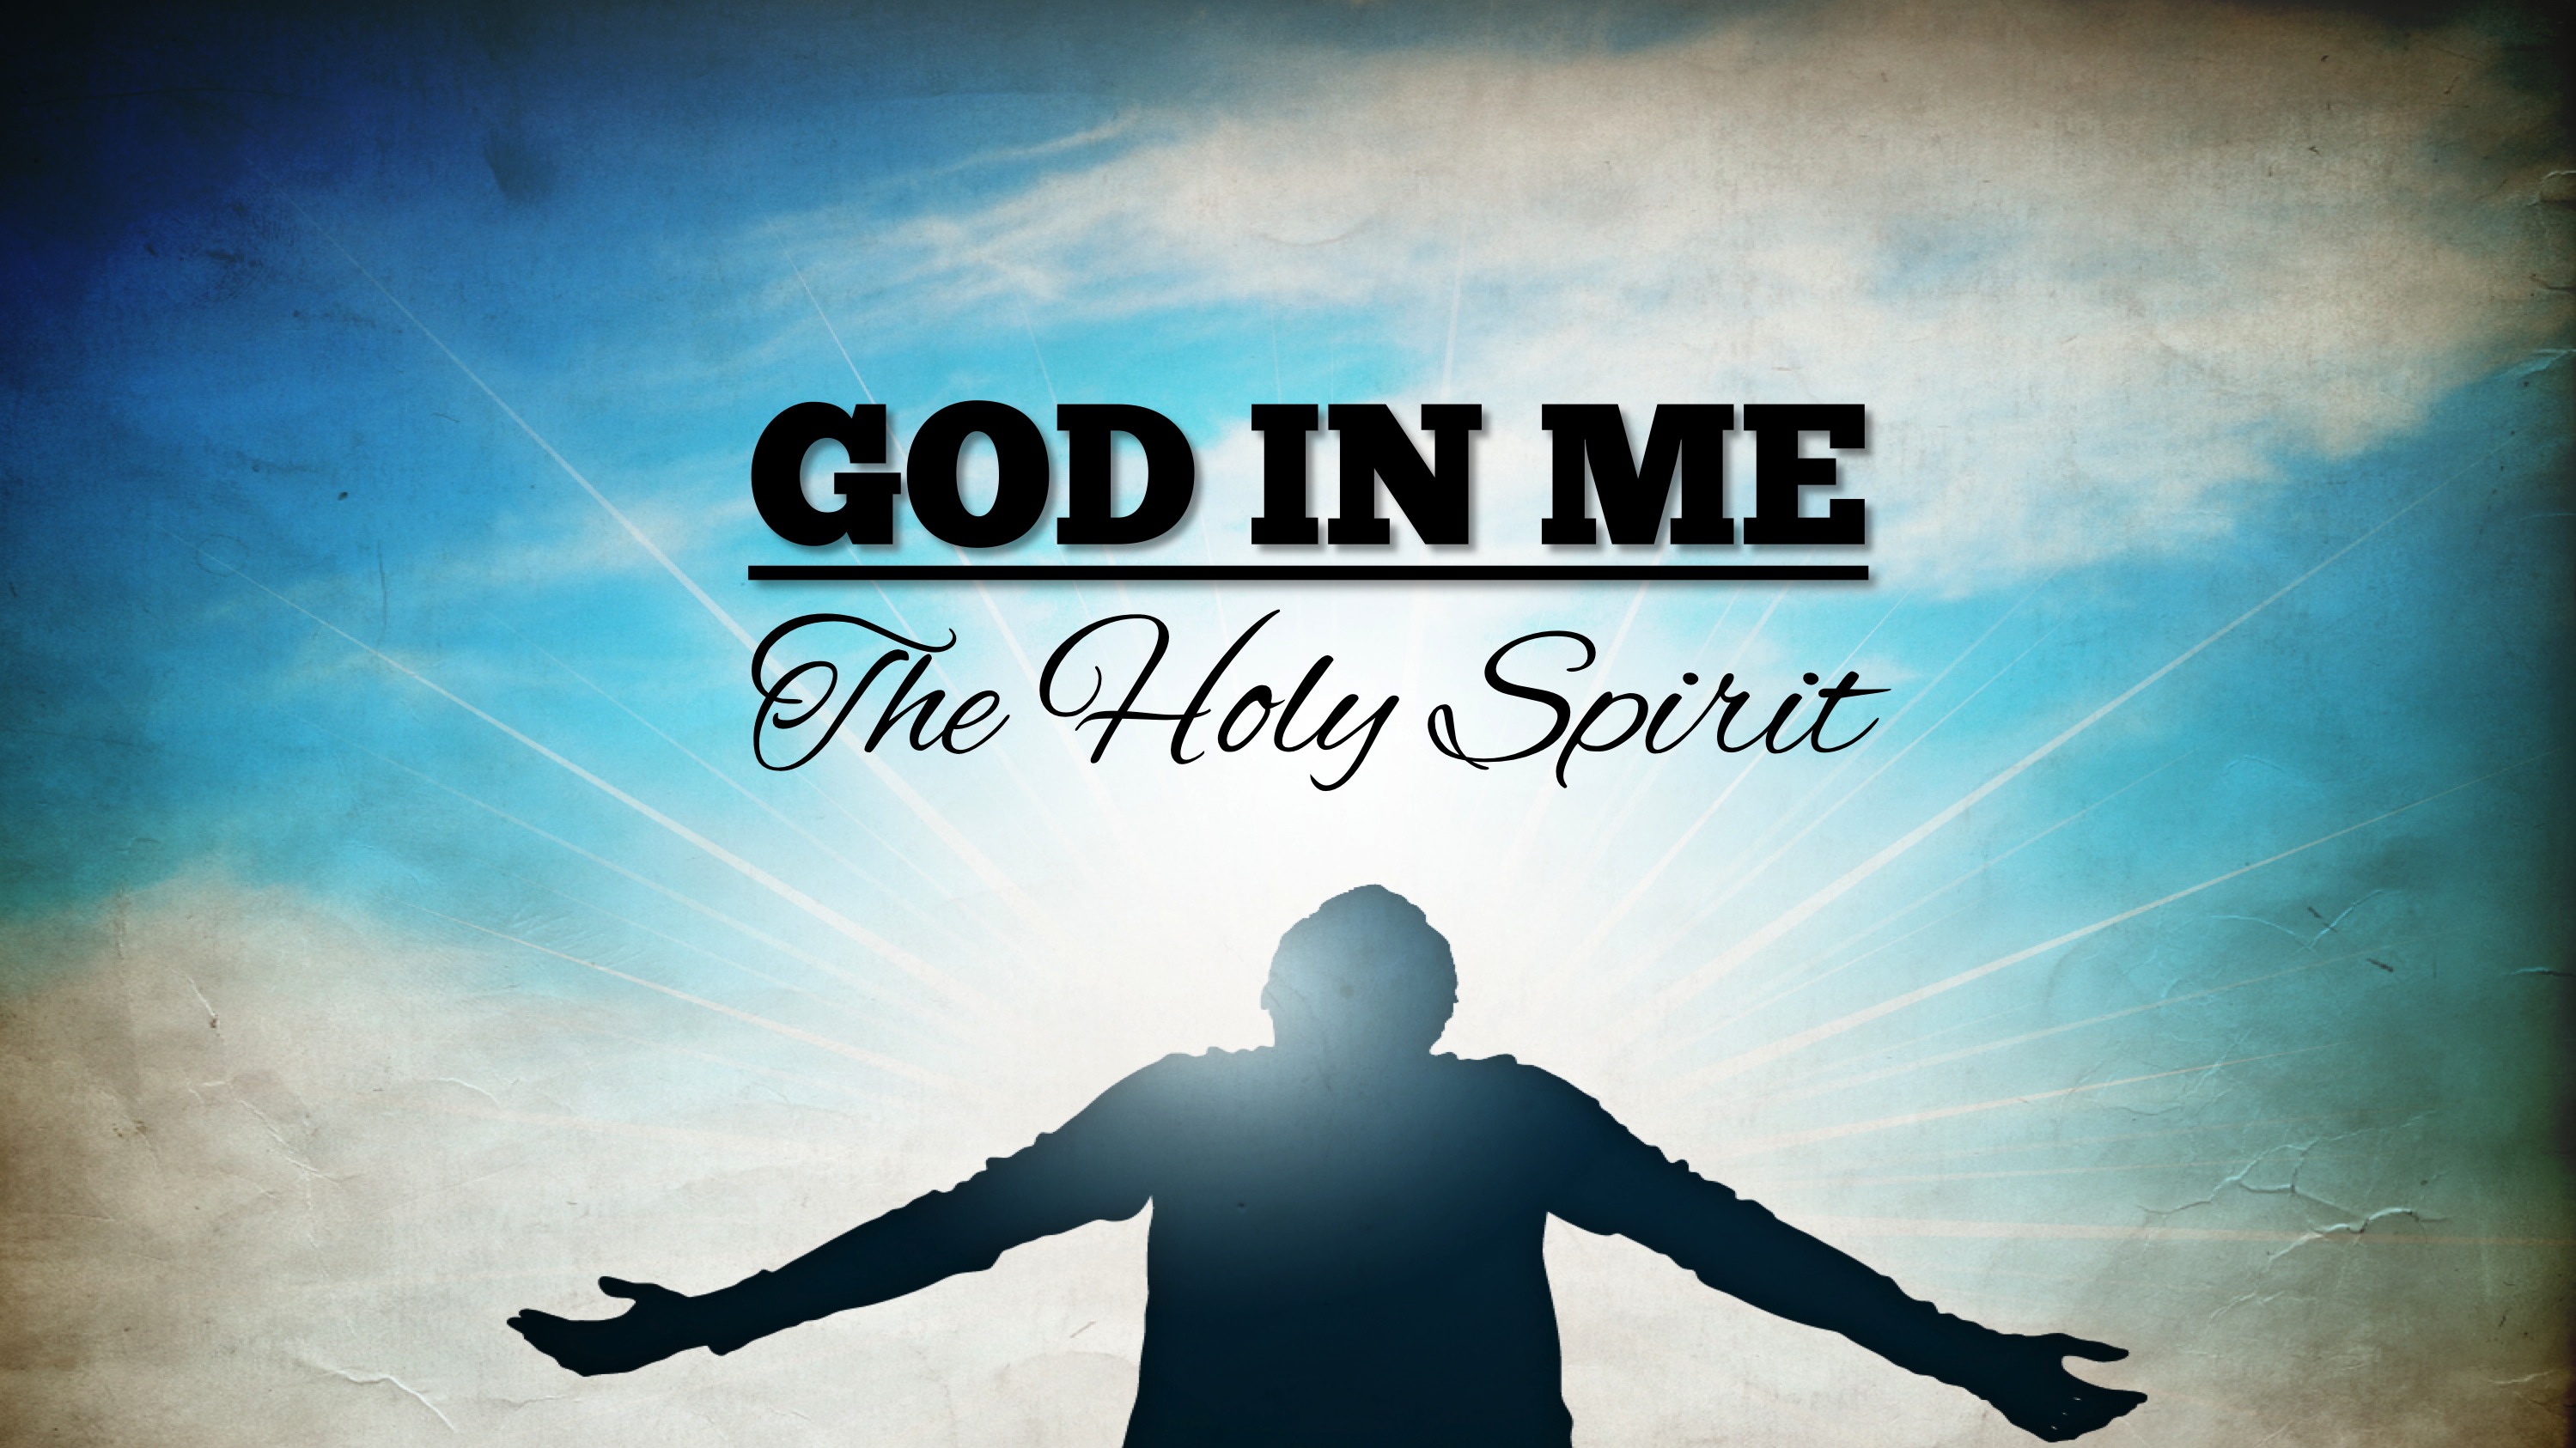 Biblical Holy Spirit sermon series Pastor Scott Mitchell The Church Next Door AZ podcast Prescott